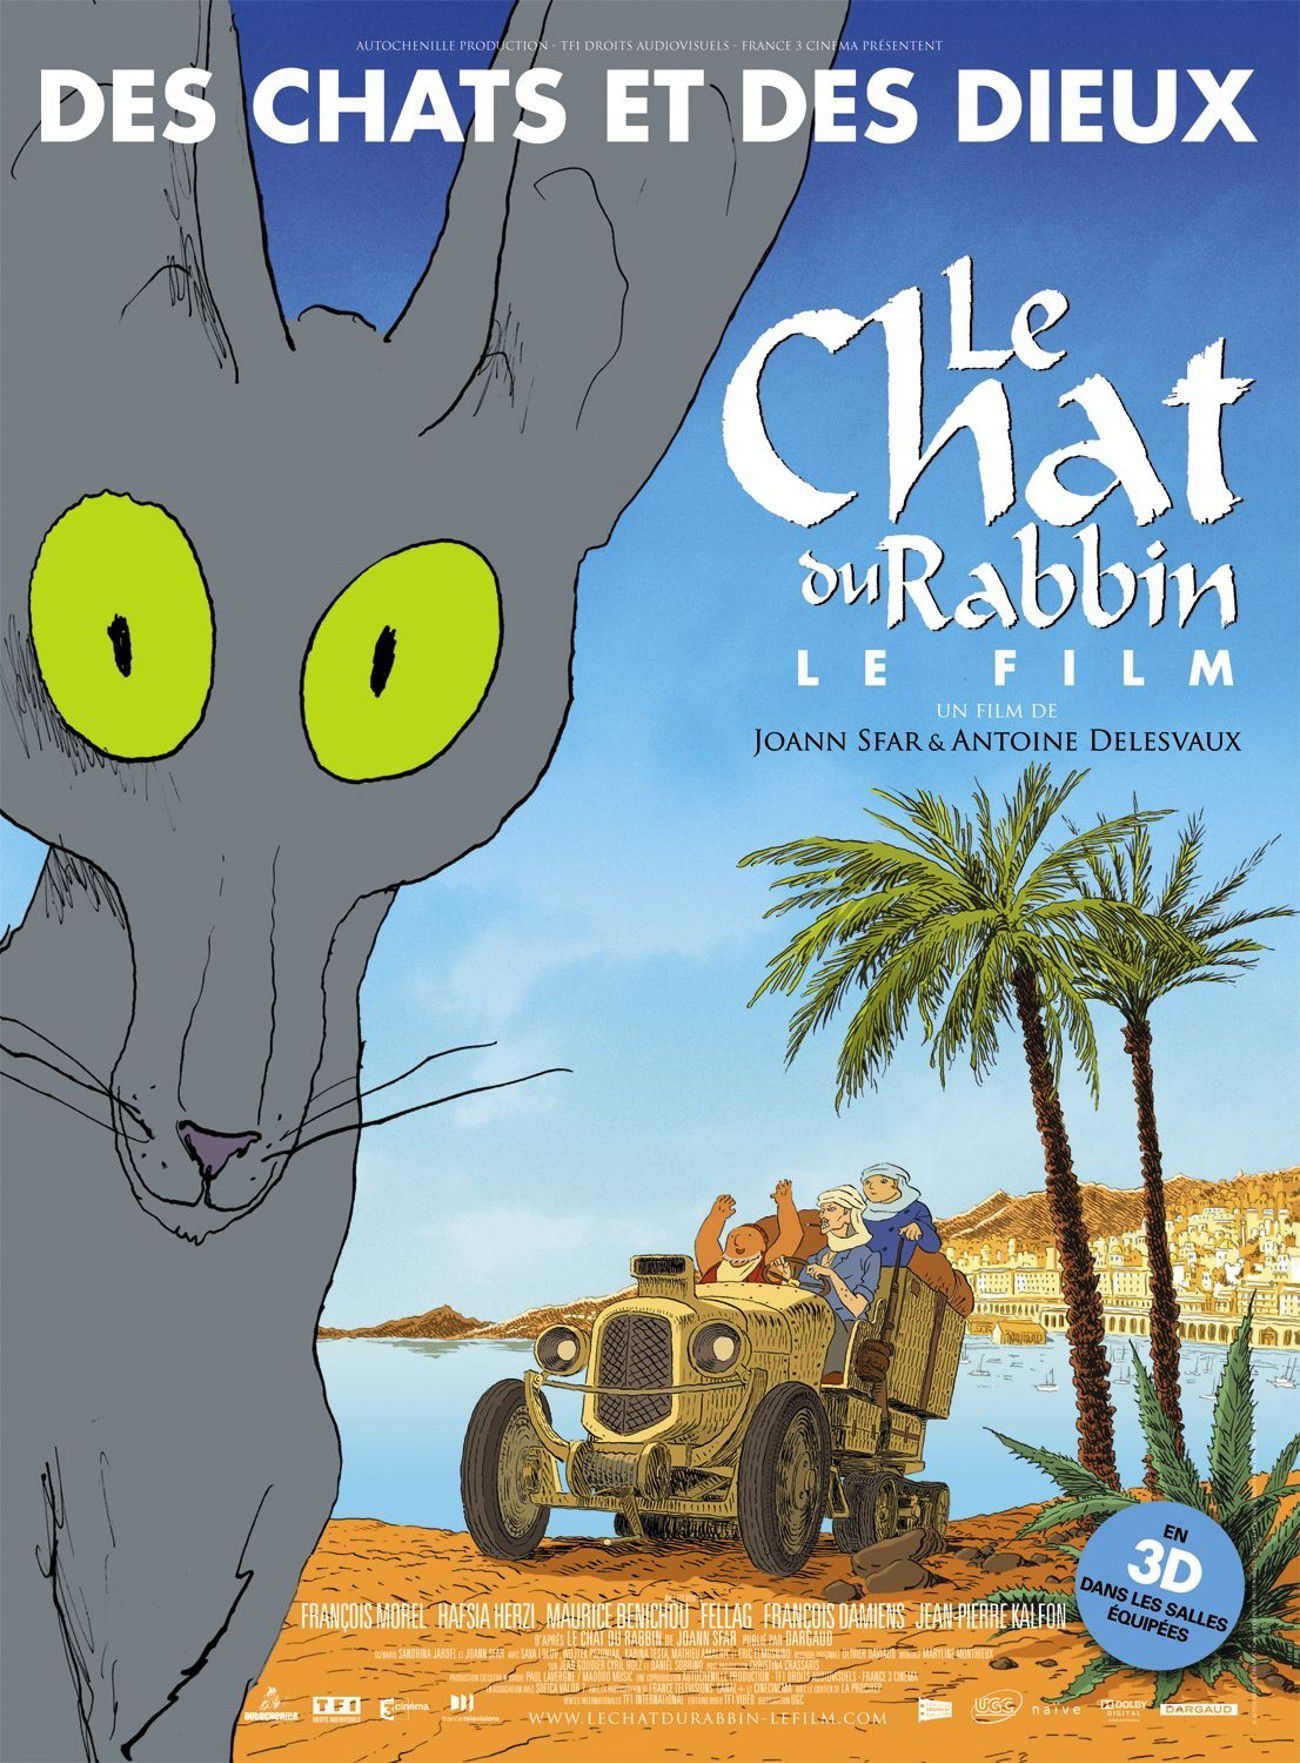 Le Chat du rabbin - Long-métrage d'animation (2011)